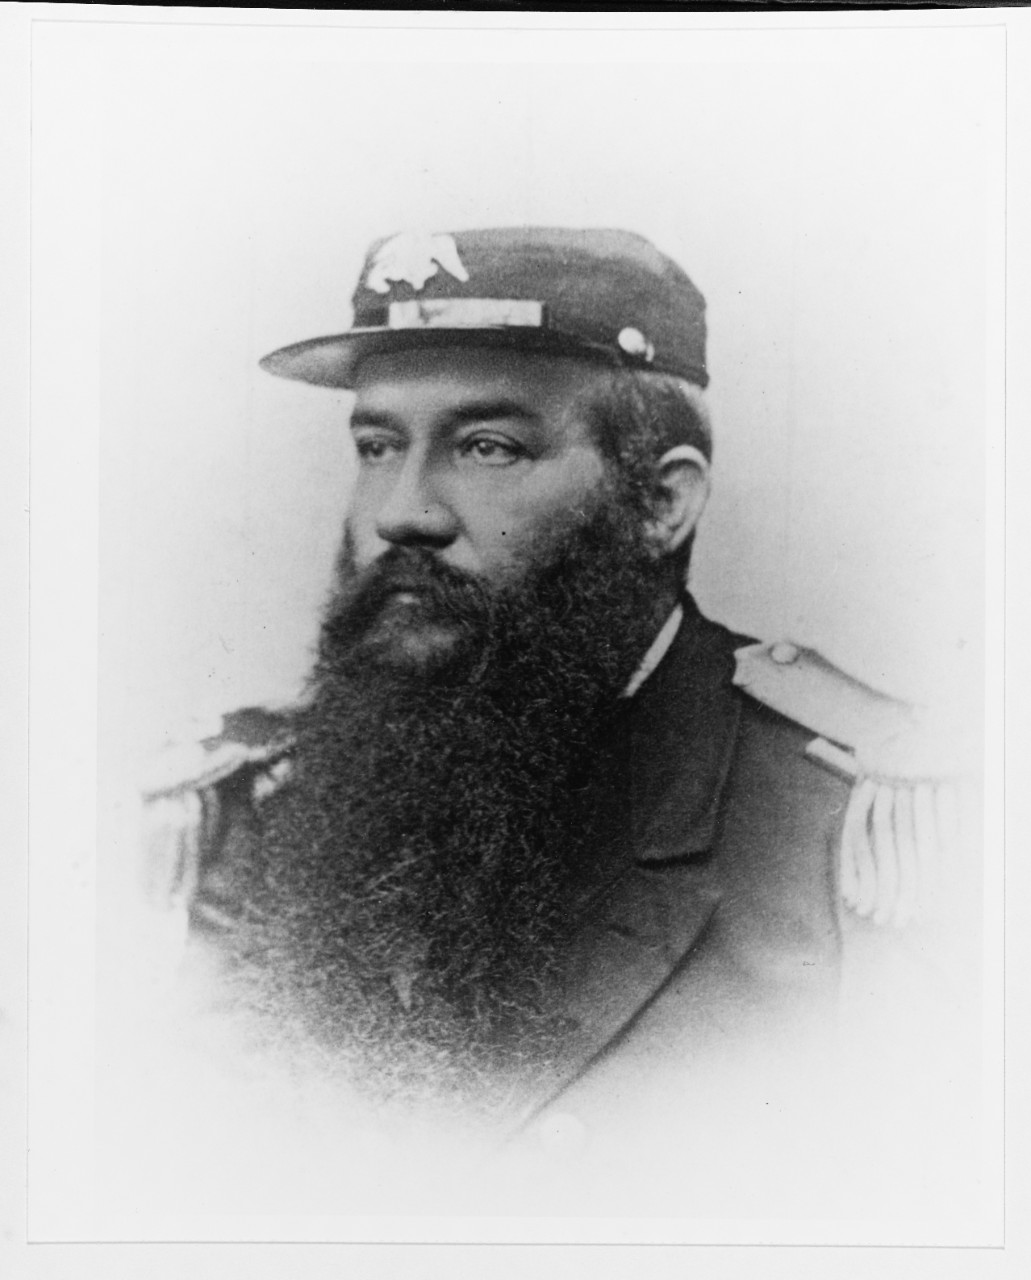 Commodore William F. Spicer, USN